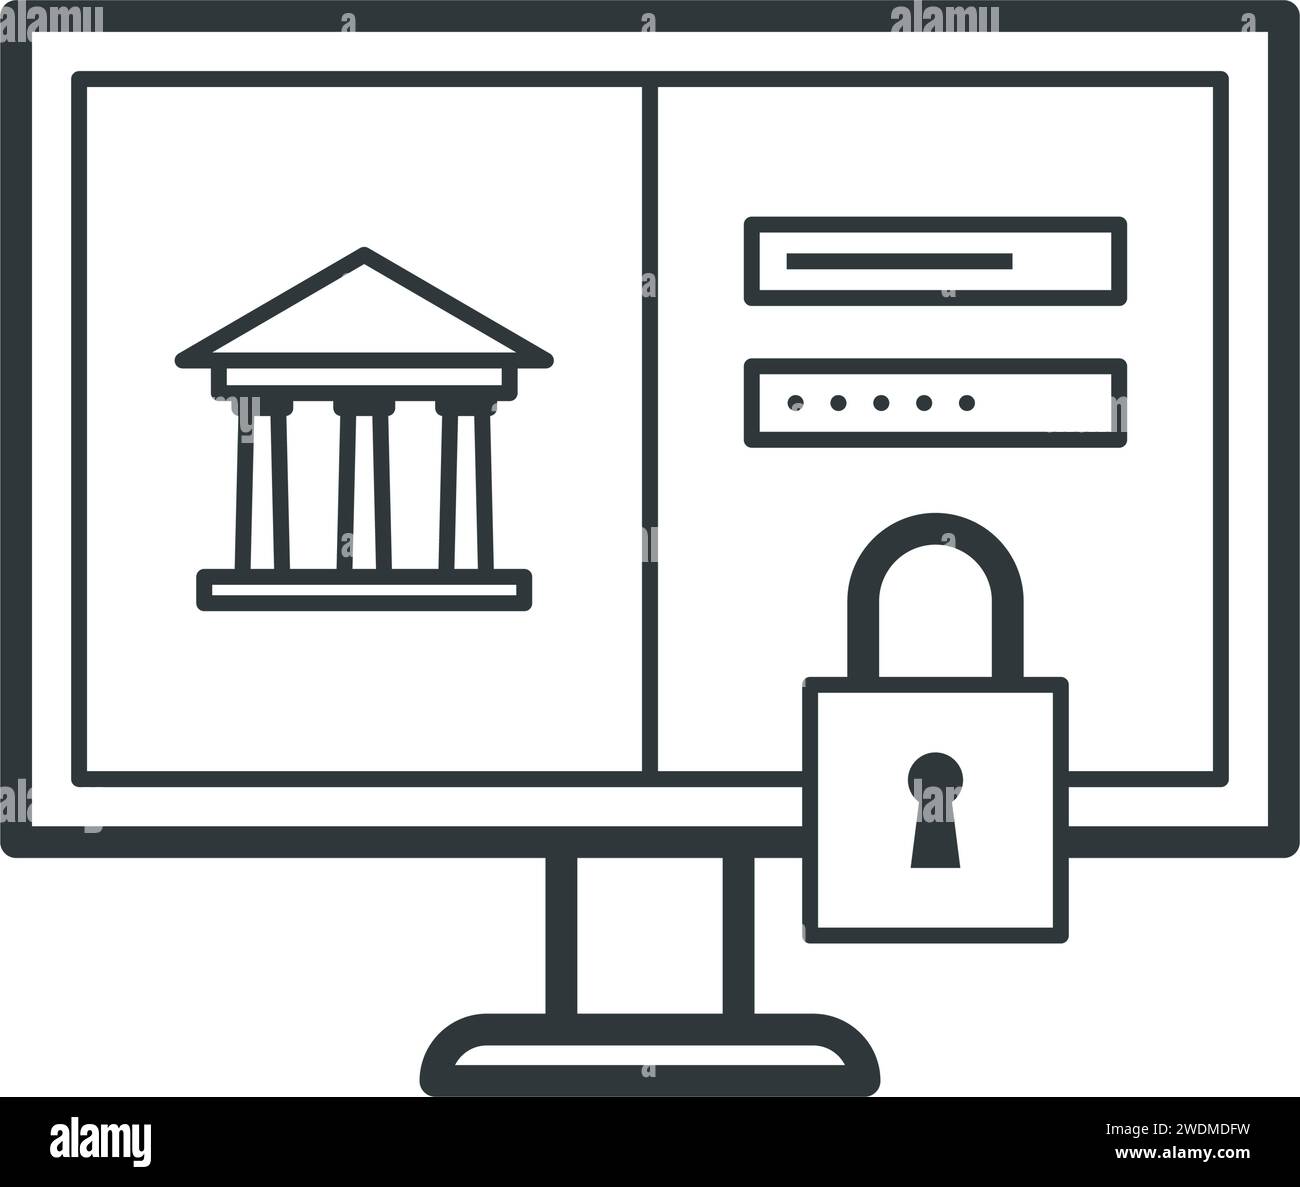 Online-Banking-Website-Anmeldung mit Schloss, isoliertes Symbol Stock Vektor